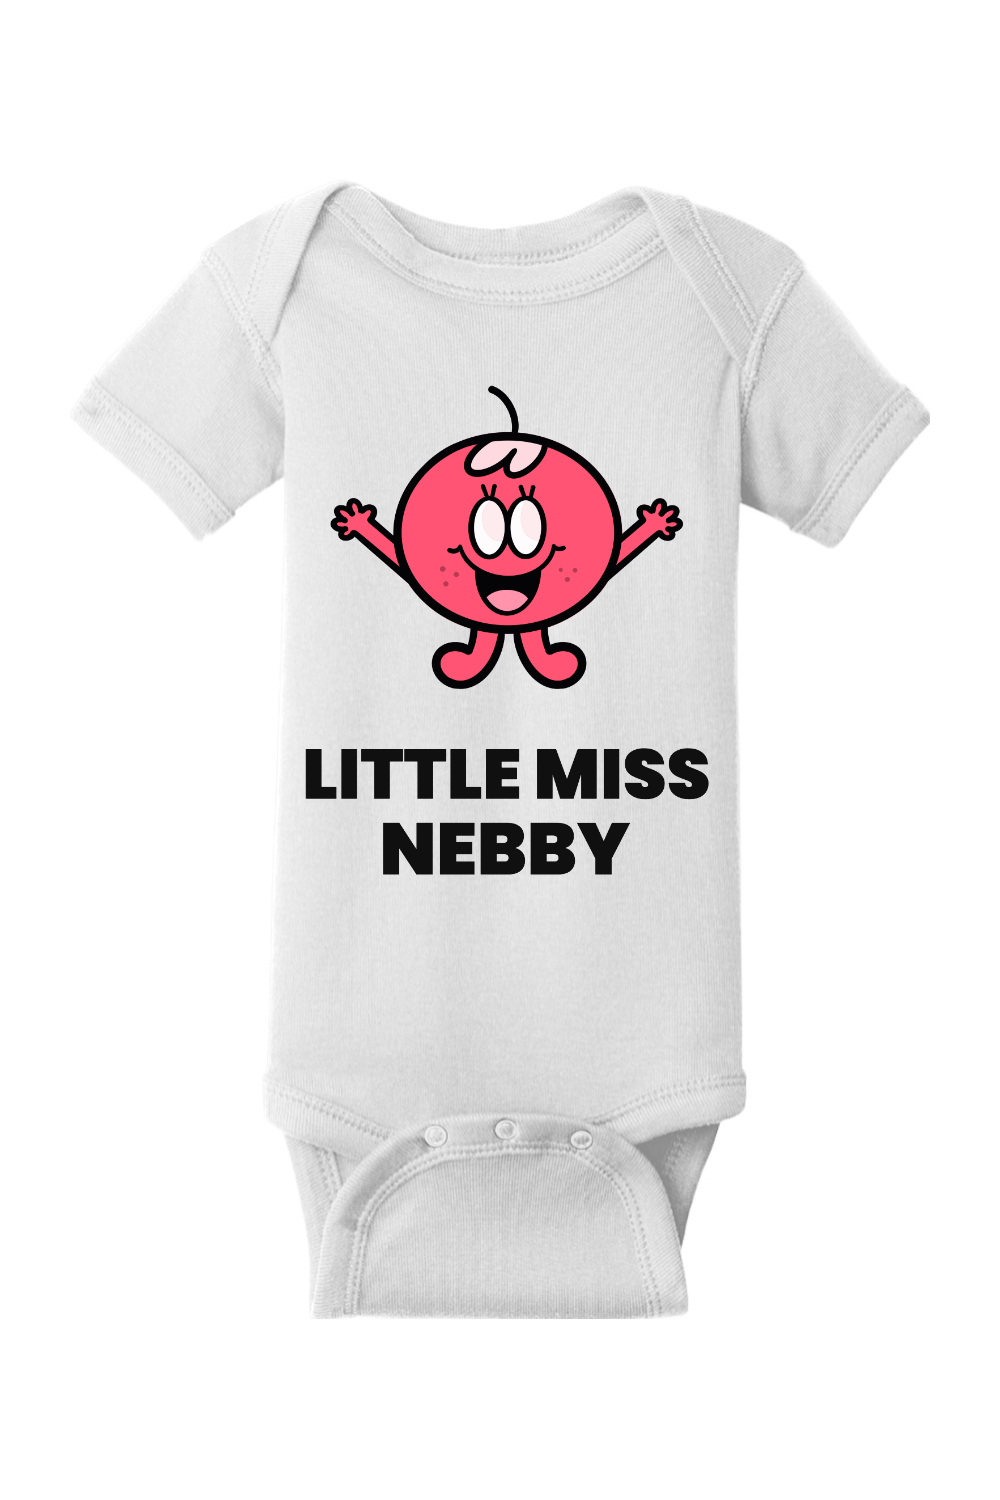 Little Miss Nebby - Infant Short Sleeve Baby Rib Bodysuit - Yinzylvania